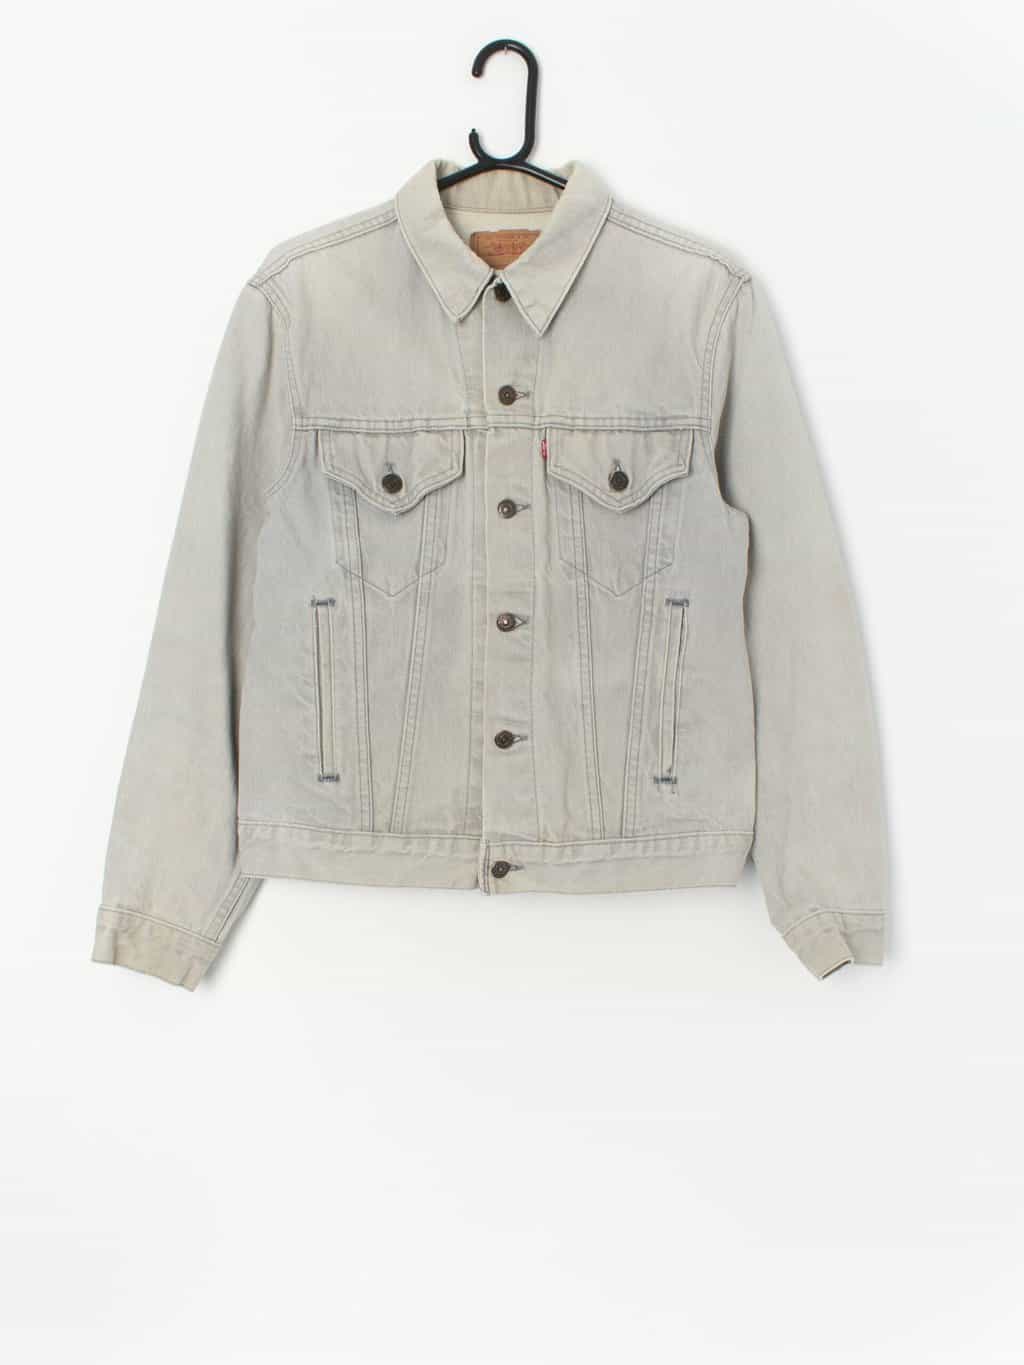 80s Levis denim jacket M rare colour pale grey jean jacket USA 